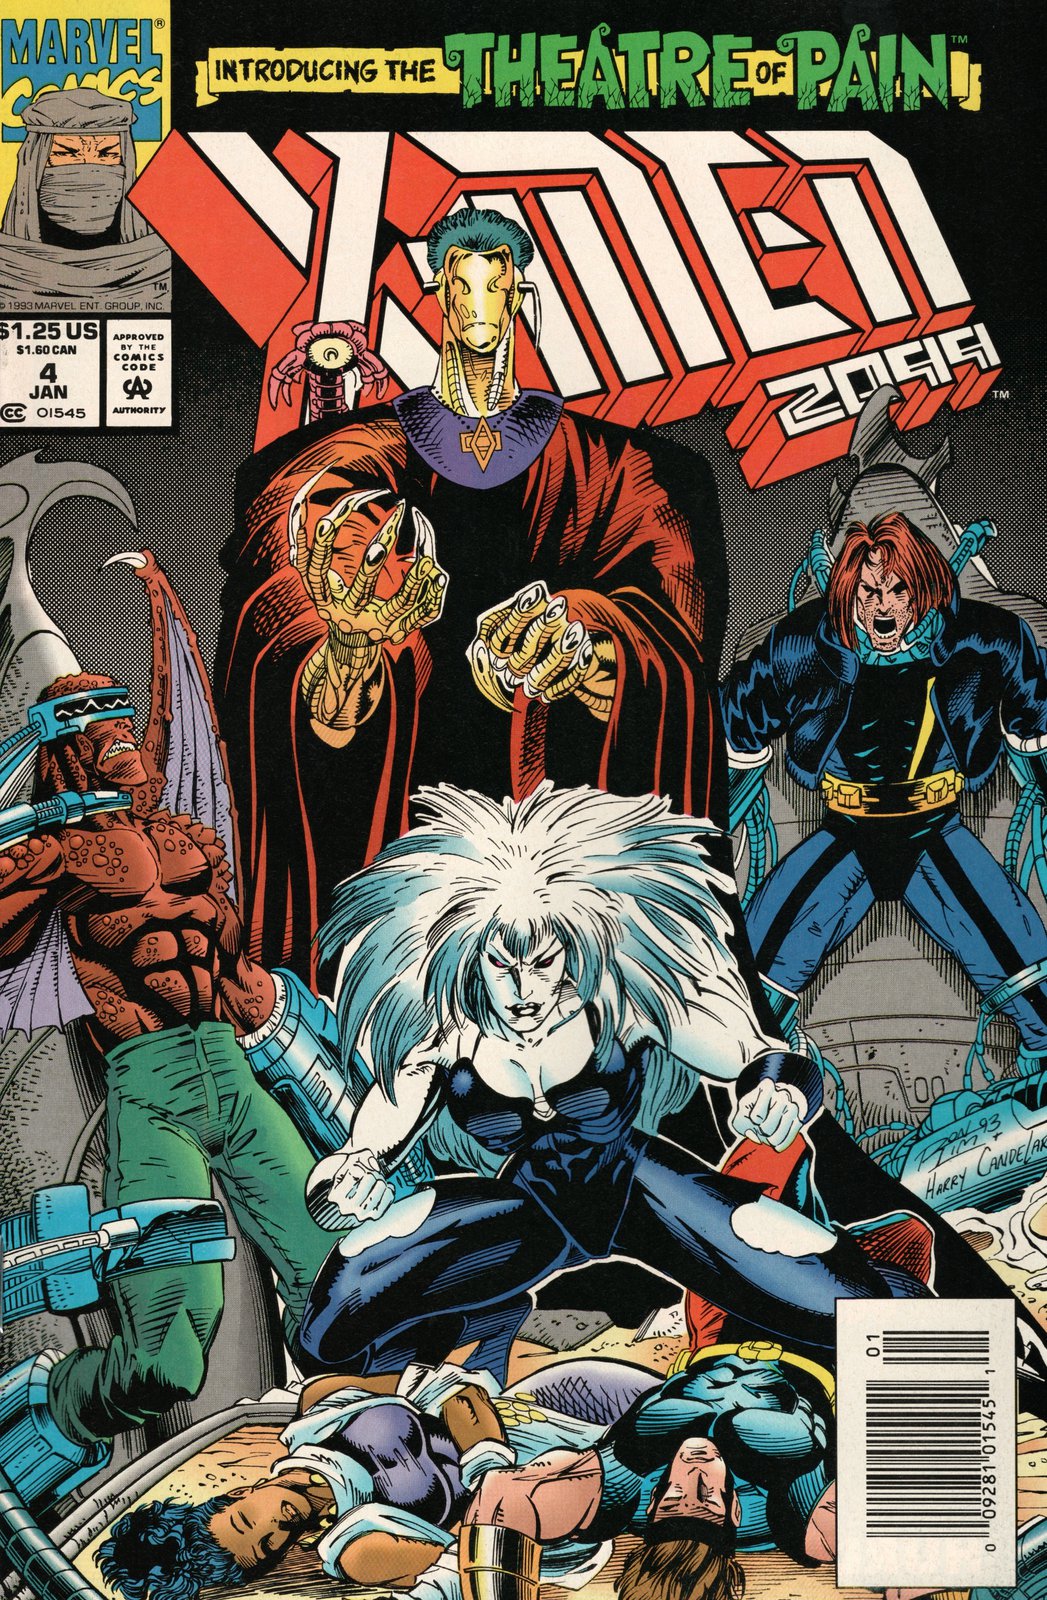 X-Men 2099 #4 Newsstand Cover (1993-1996) Marvel Comics